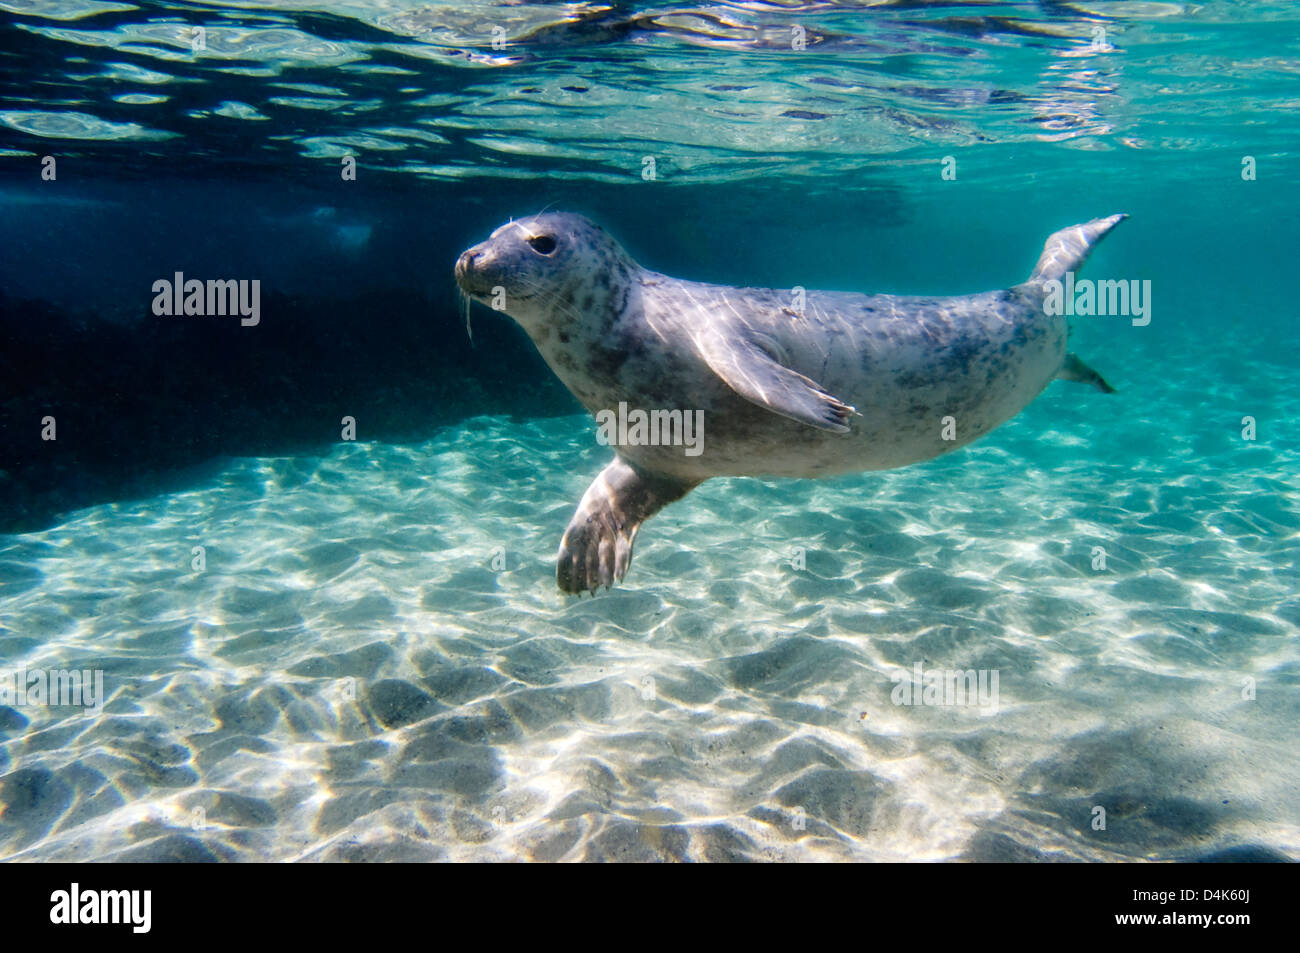 Seal swimming underwater Stock Photo